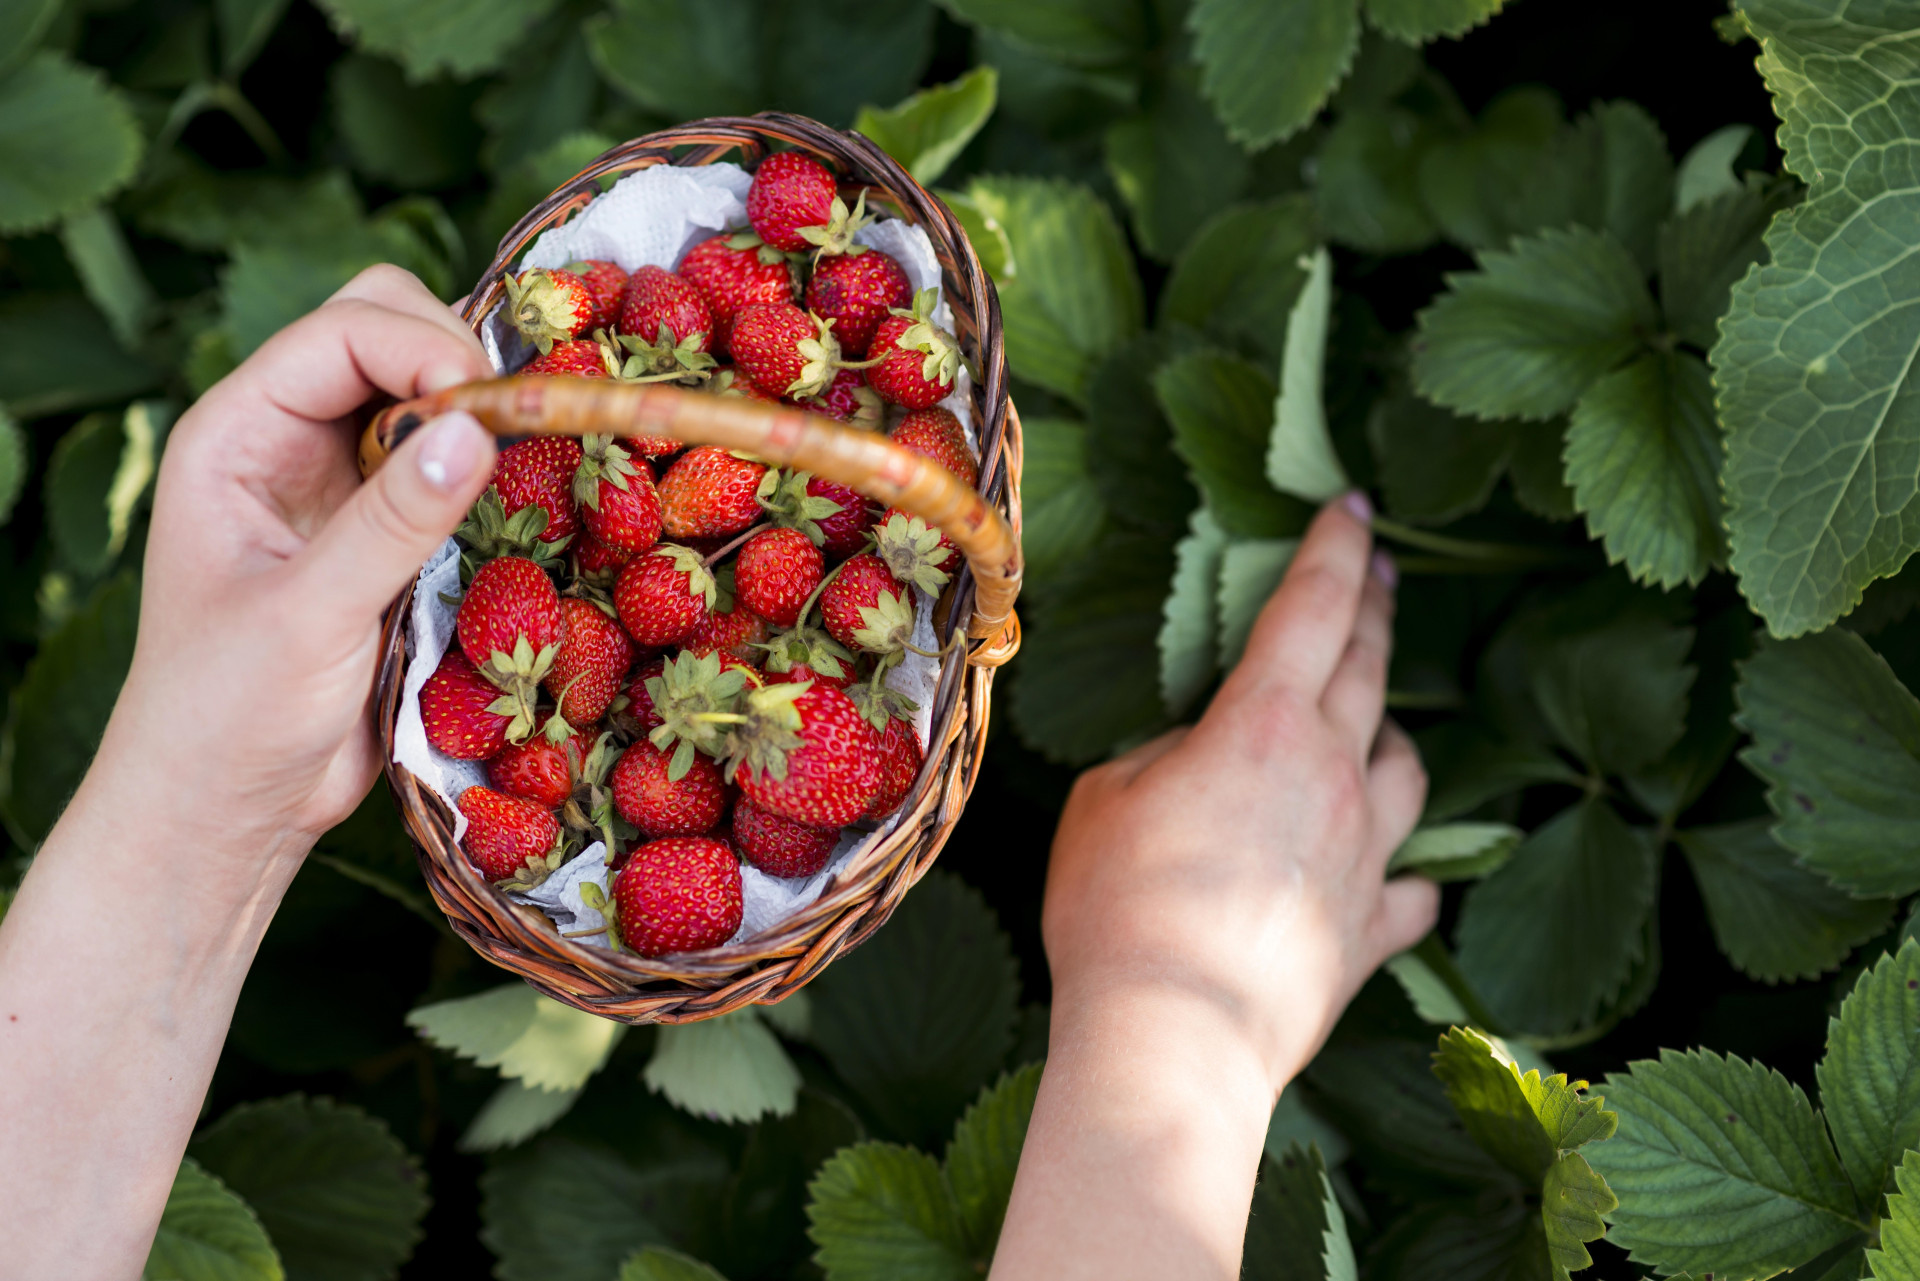 close-up-hands-holding-fruits-basket.jpg